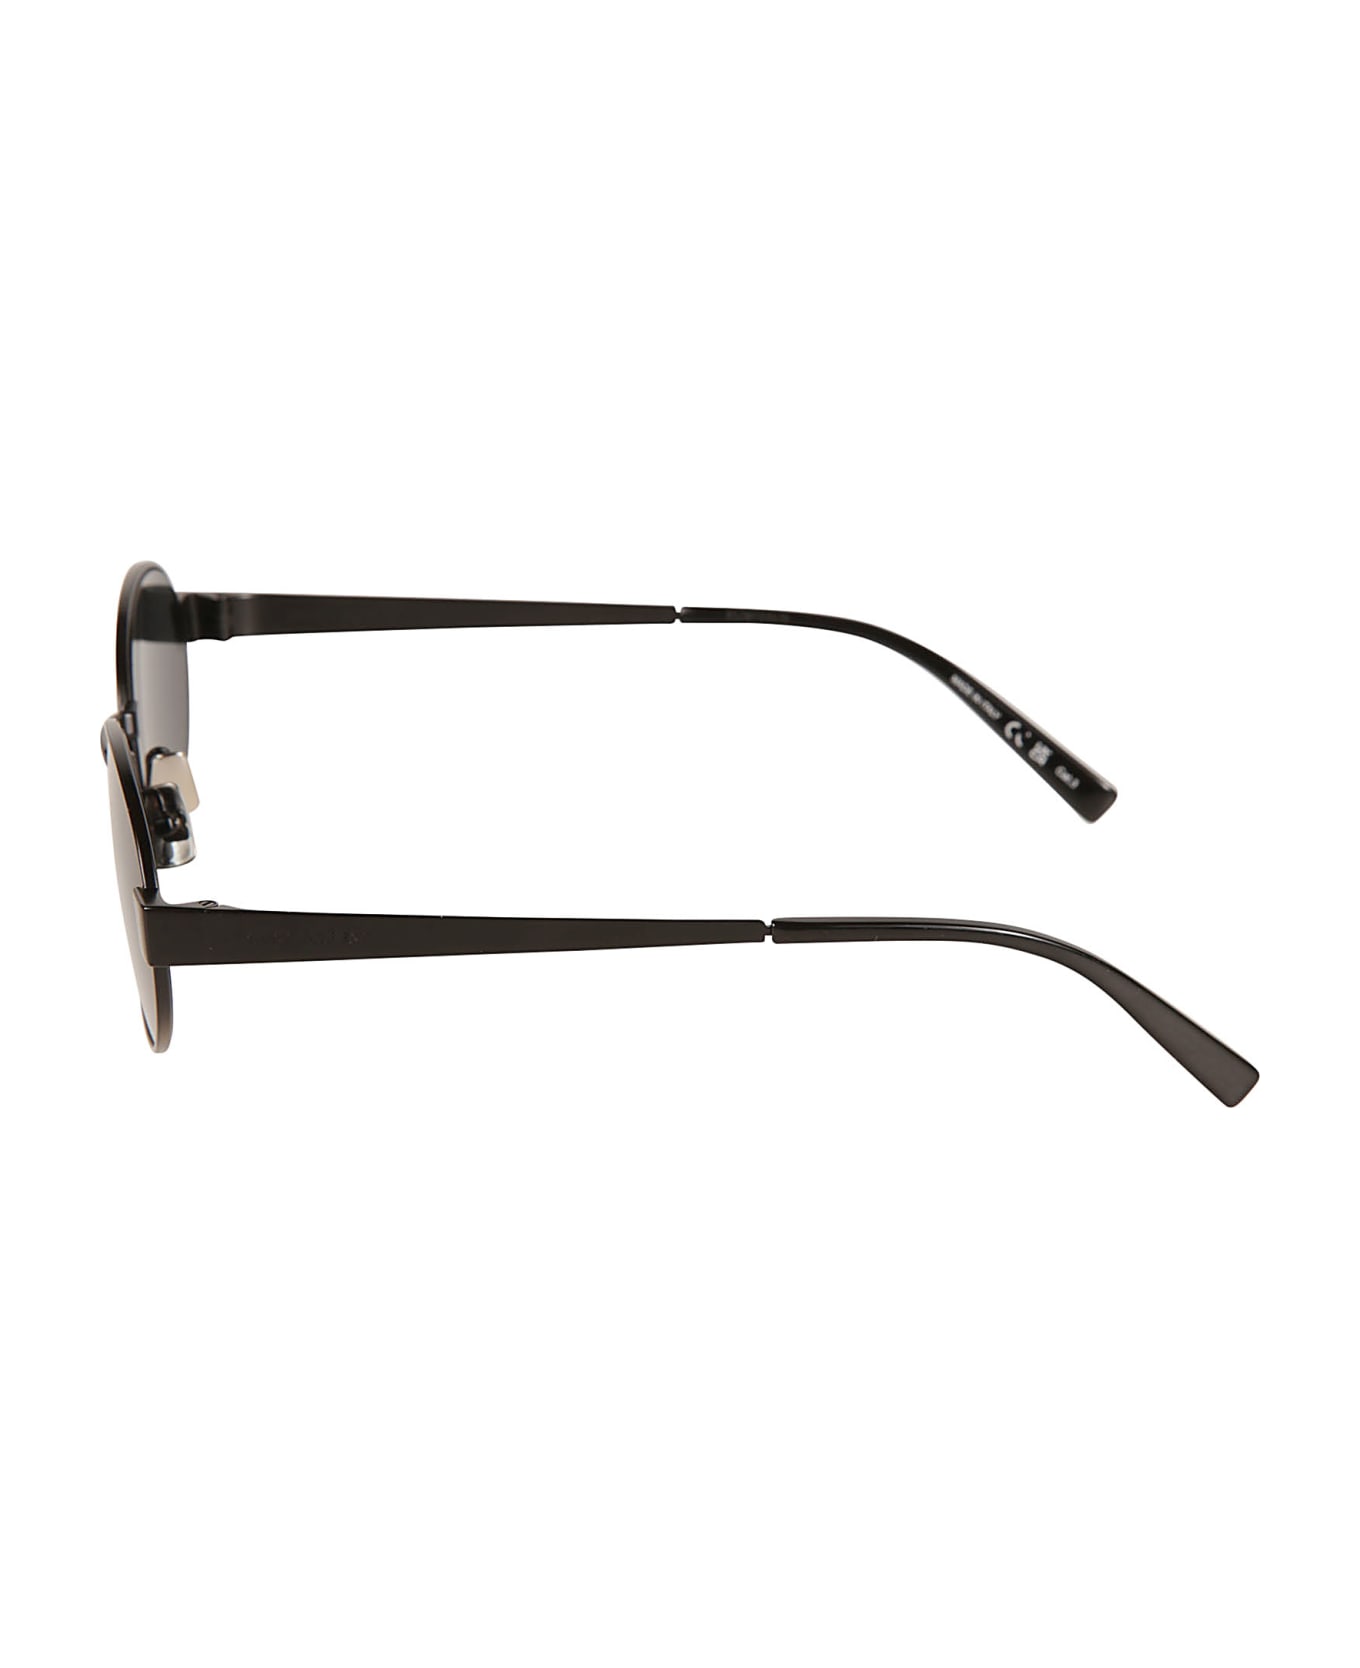 Saint Laurent Eyewear Sl 692 Sunglasses - Black